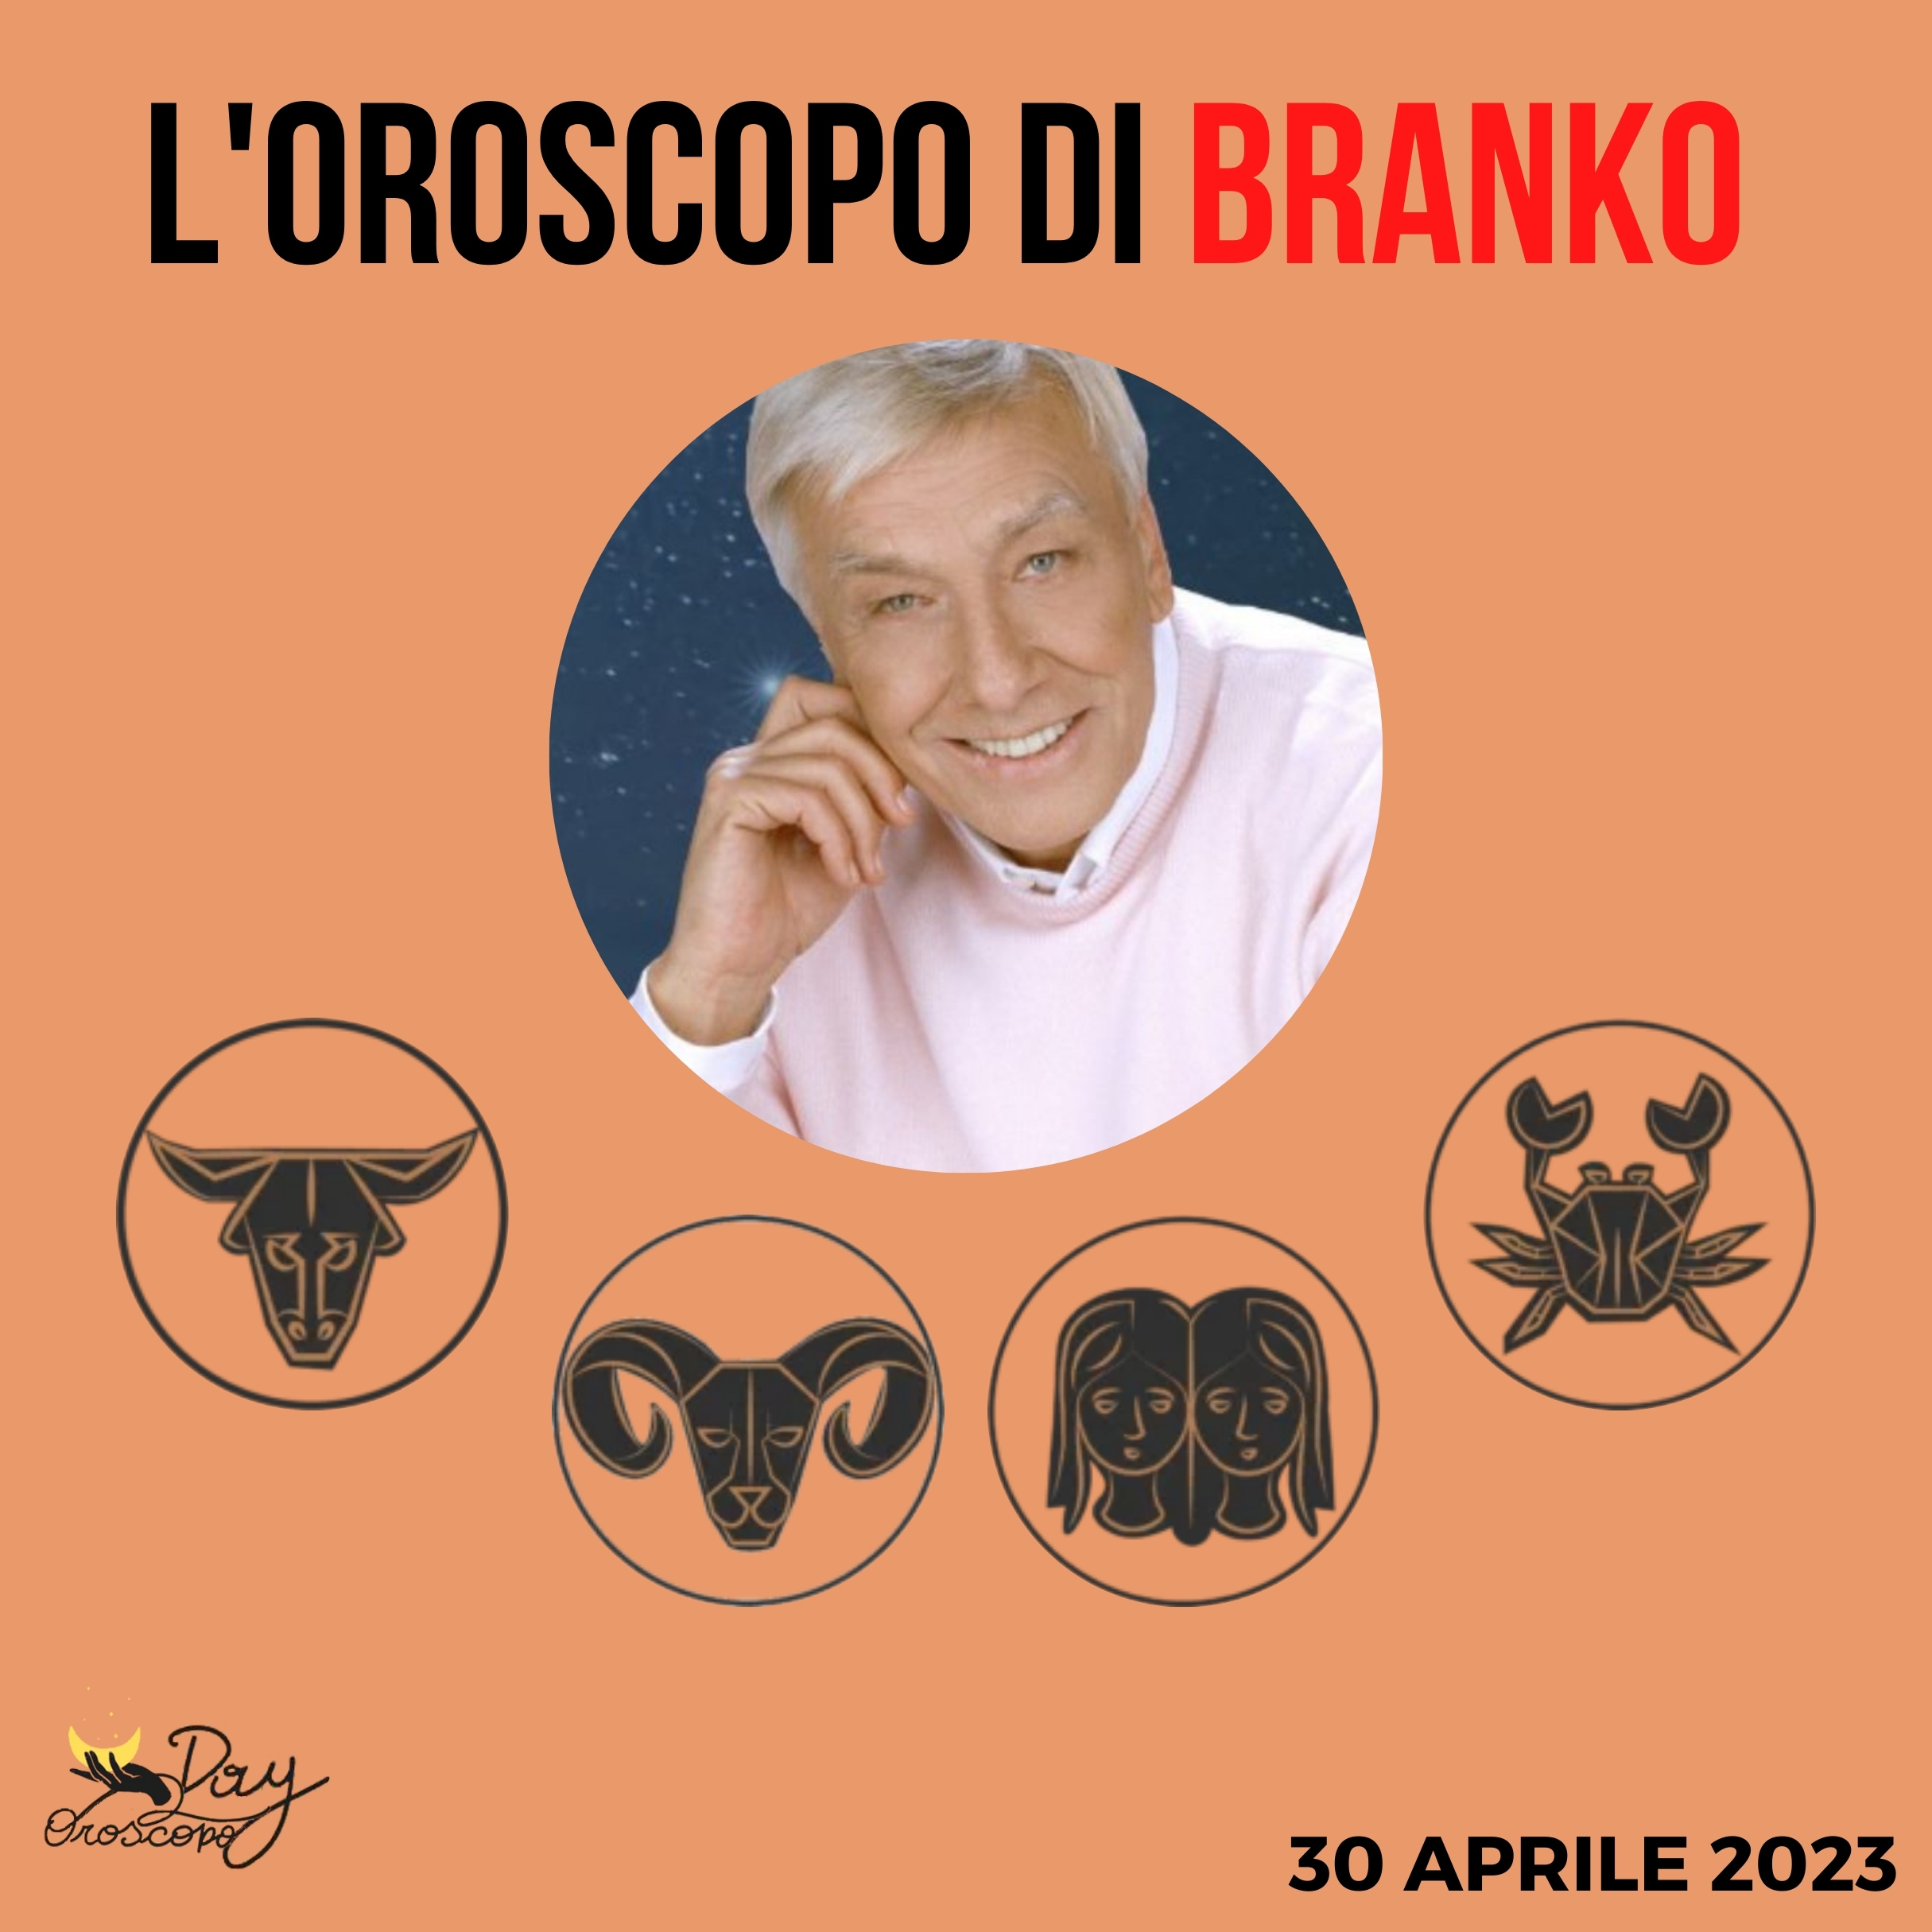 Oroscopo oggi domani Branko 30 aprile Toro Ariete Gemelli Cancro